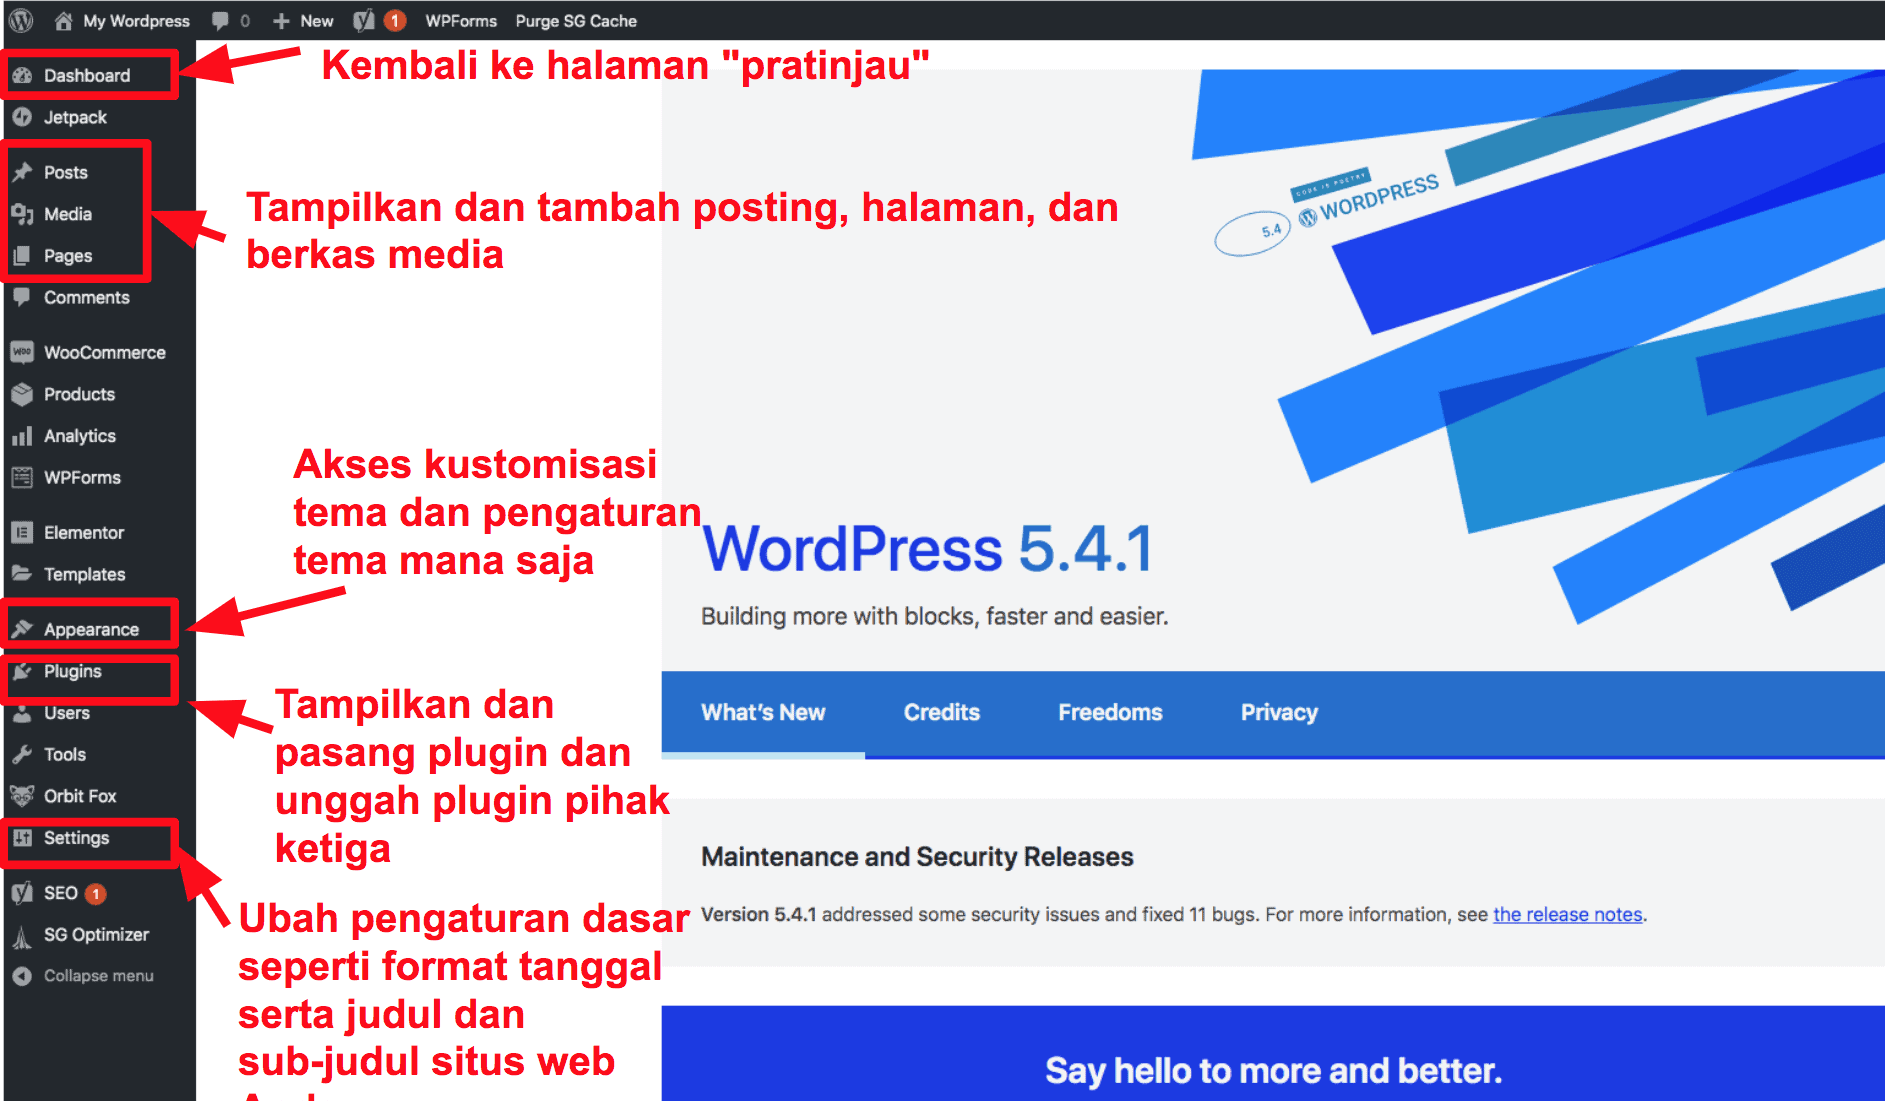 The WordPress dashboard ID16